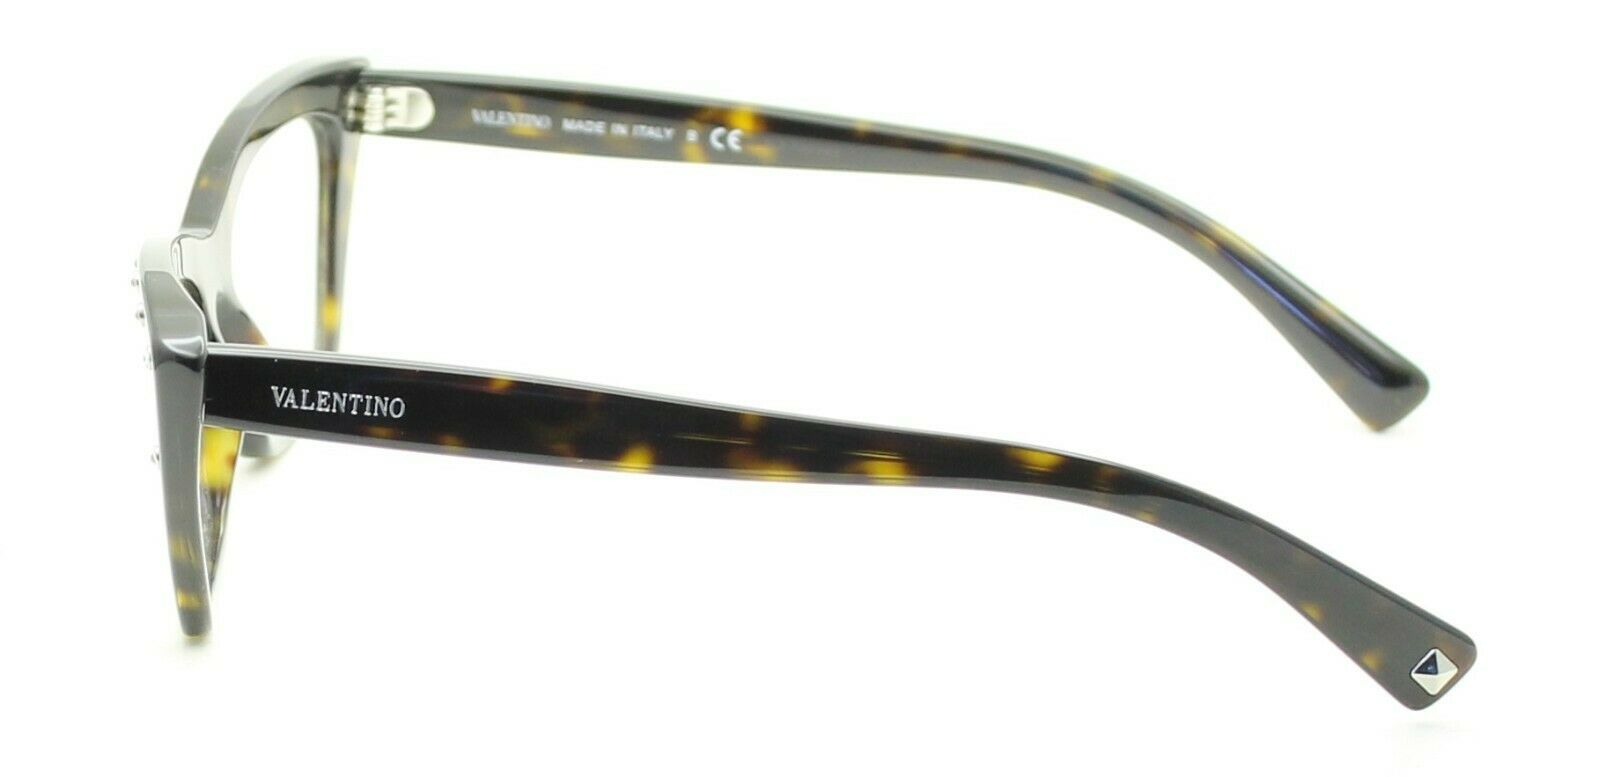 VALENTINO VA 3031 5002 Eyewear FRAMES RX Optical Eyeglasses Glasses New - Italy